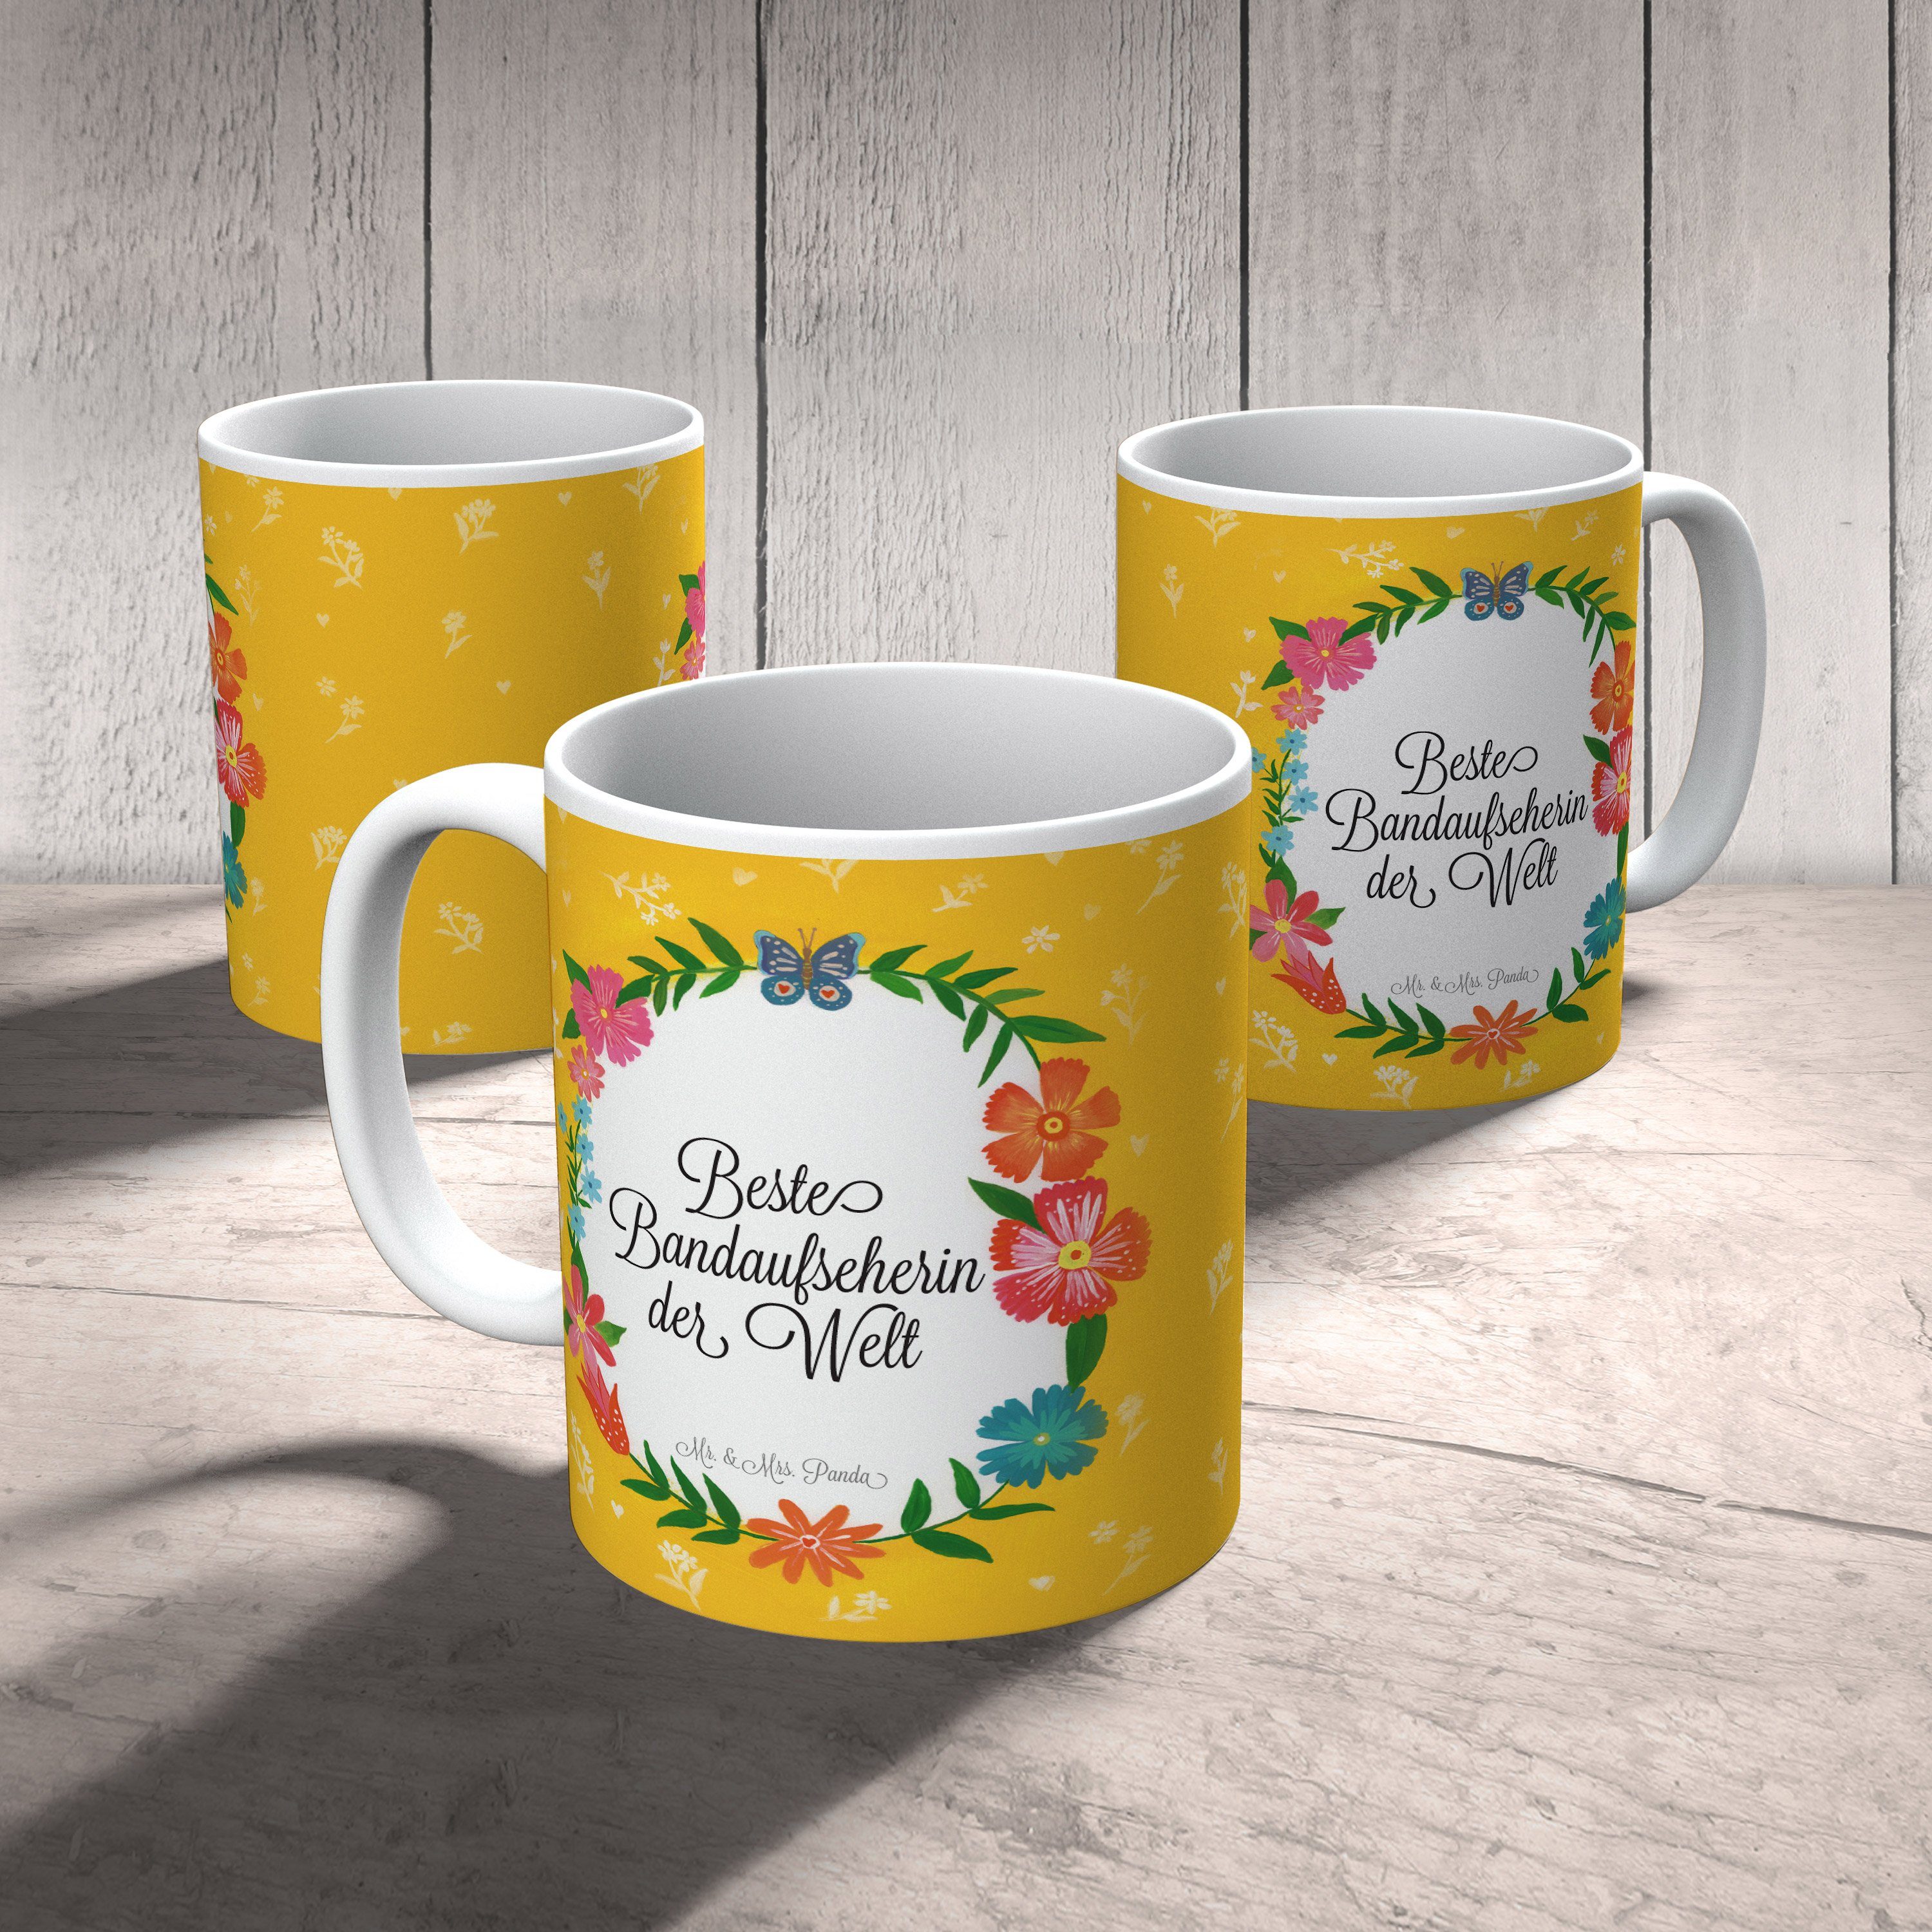 Mr. & Mrs. Panda Tasse Keramik - Tasse, Geschenk Geschenk, Ta, Ausbildung, Tasse, Büro Bandaufseherin